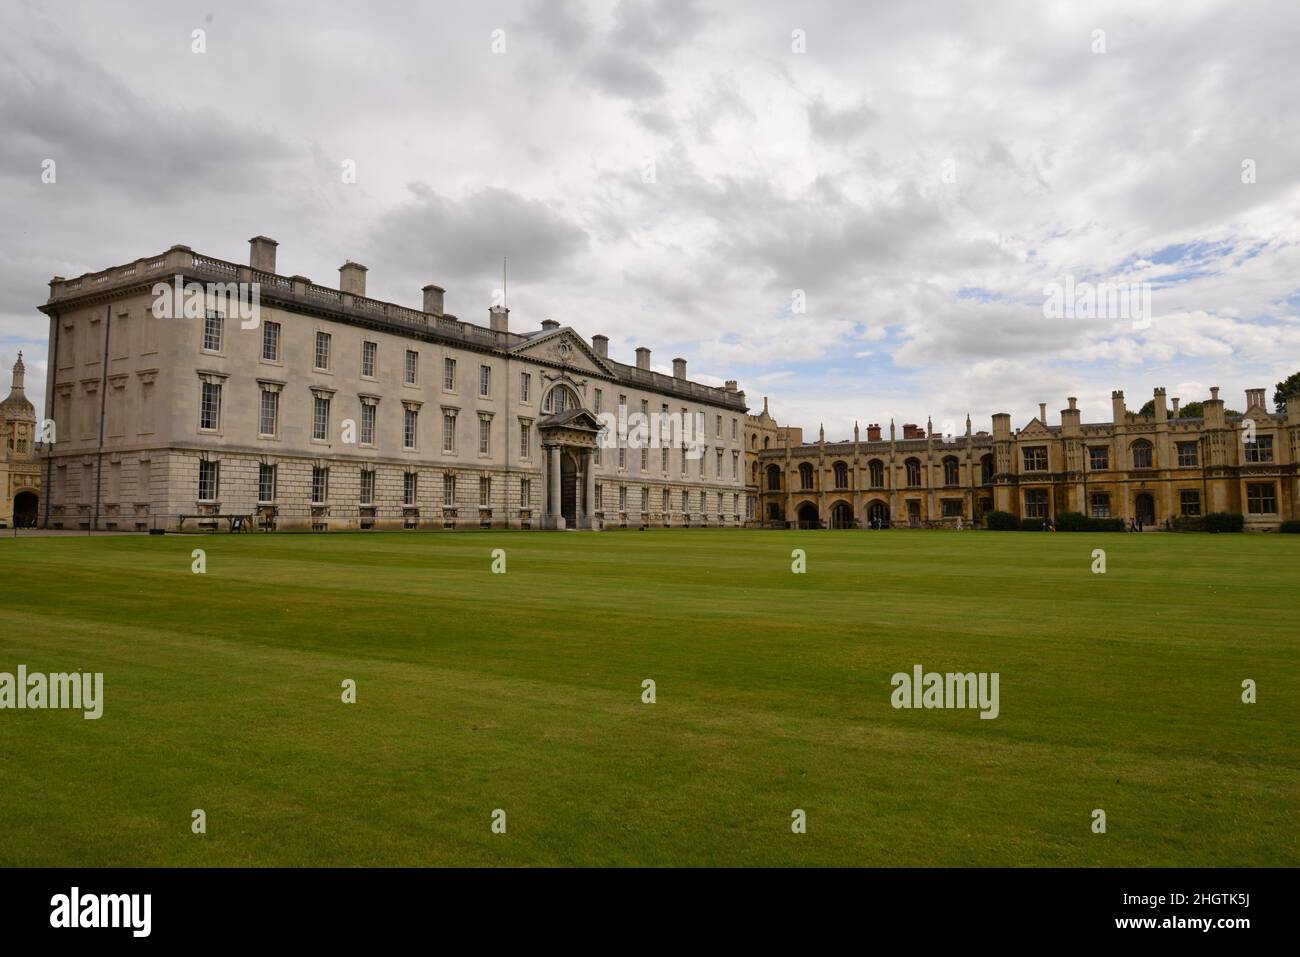 L'université de Cambridge attire de nombreux touristes chaque année de ses bâtiments classiques. Banque D'Images